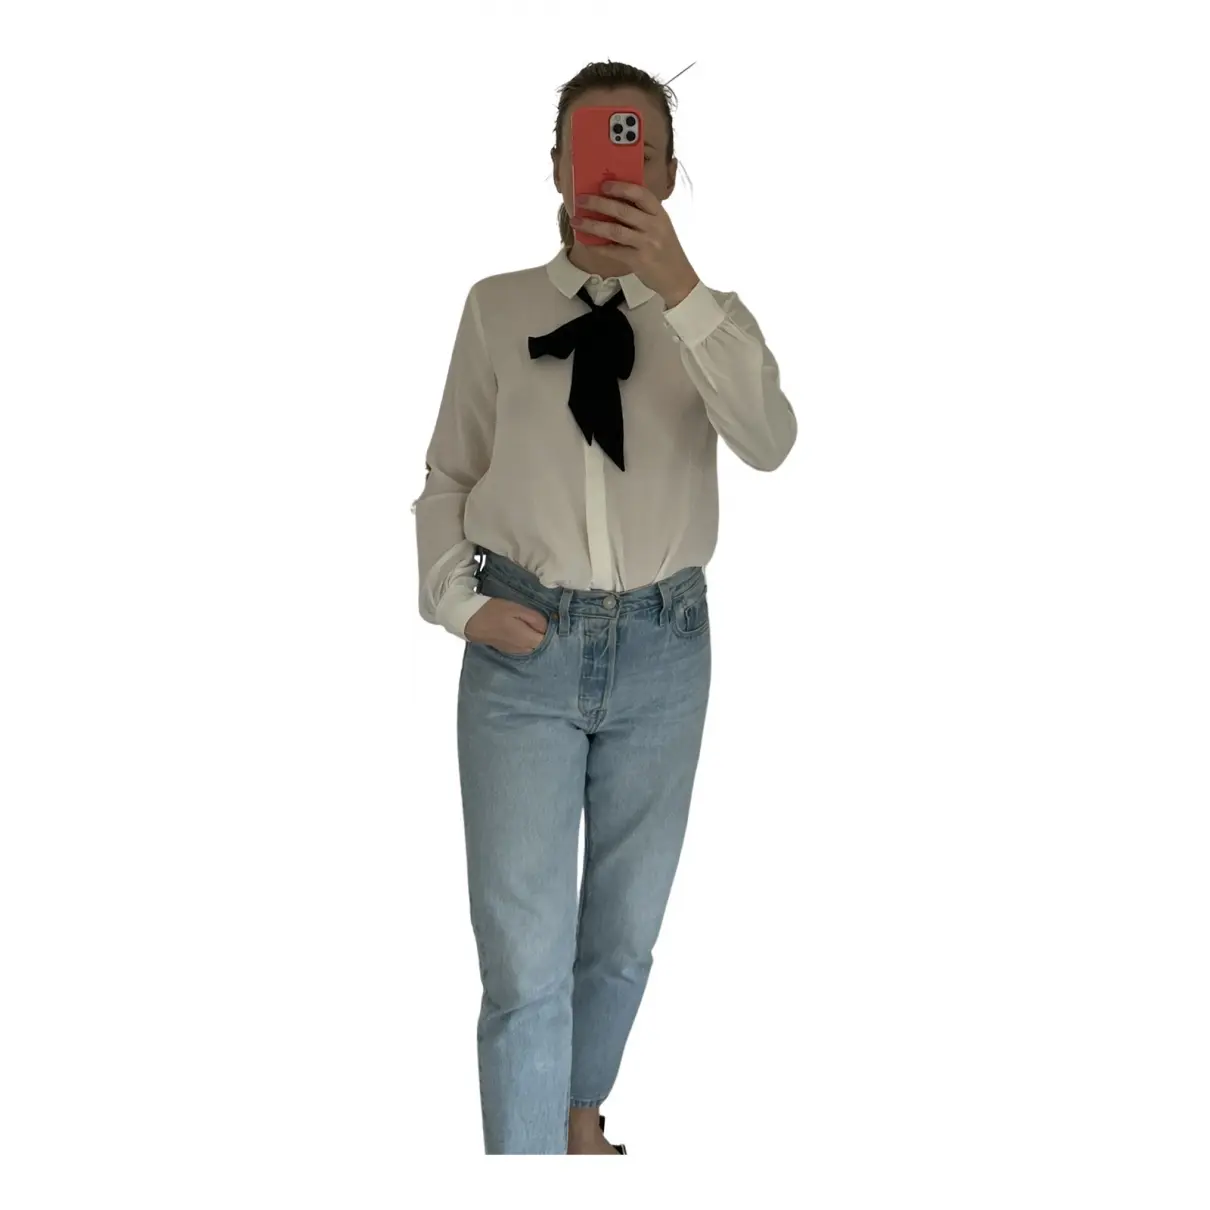 Buy Sézane Silk blouse online